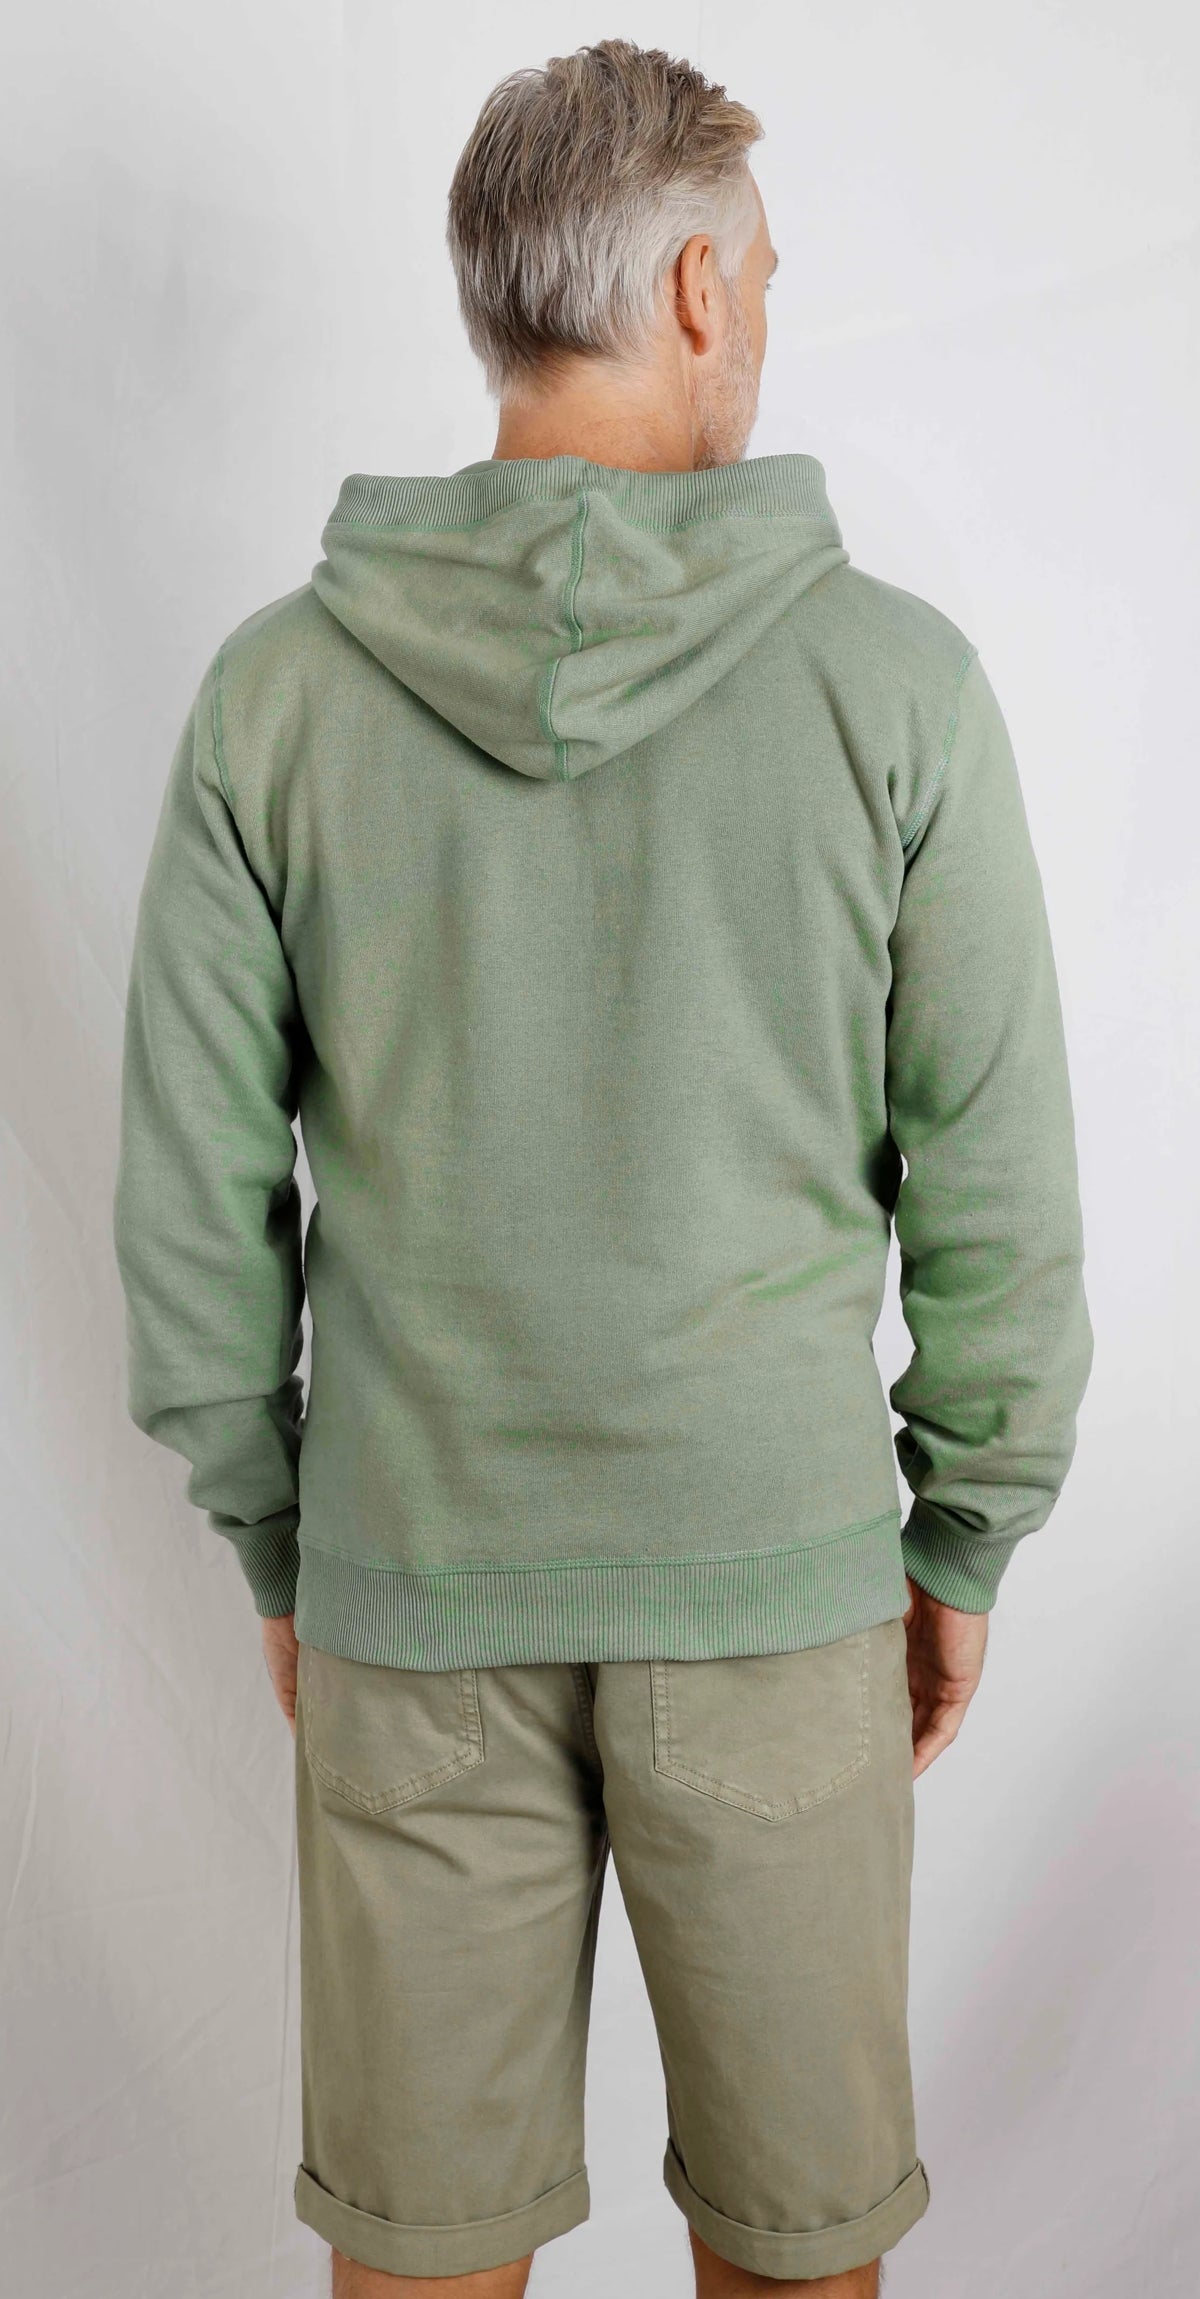 Men's hooded pop over Bryant sweatshirt from Weird Fish in Pistachio Green.